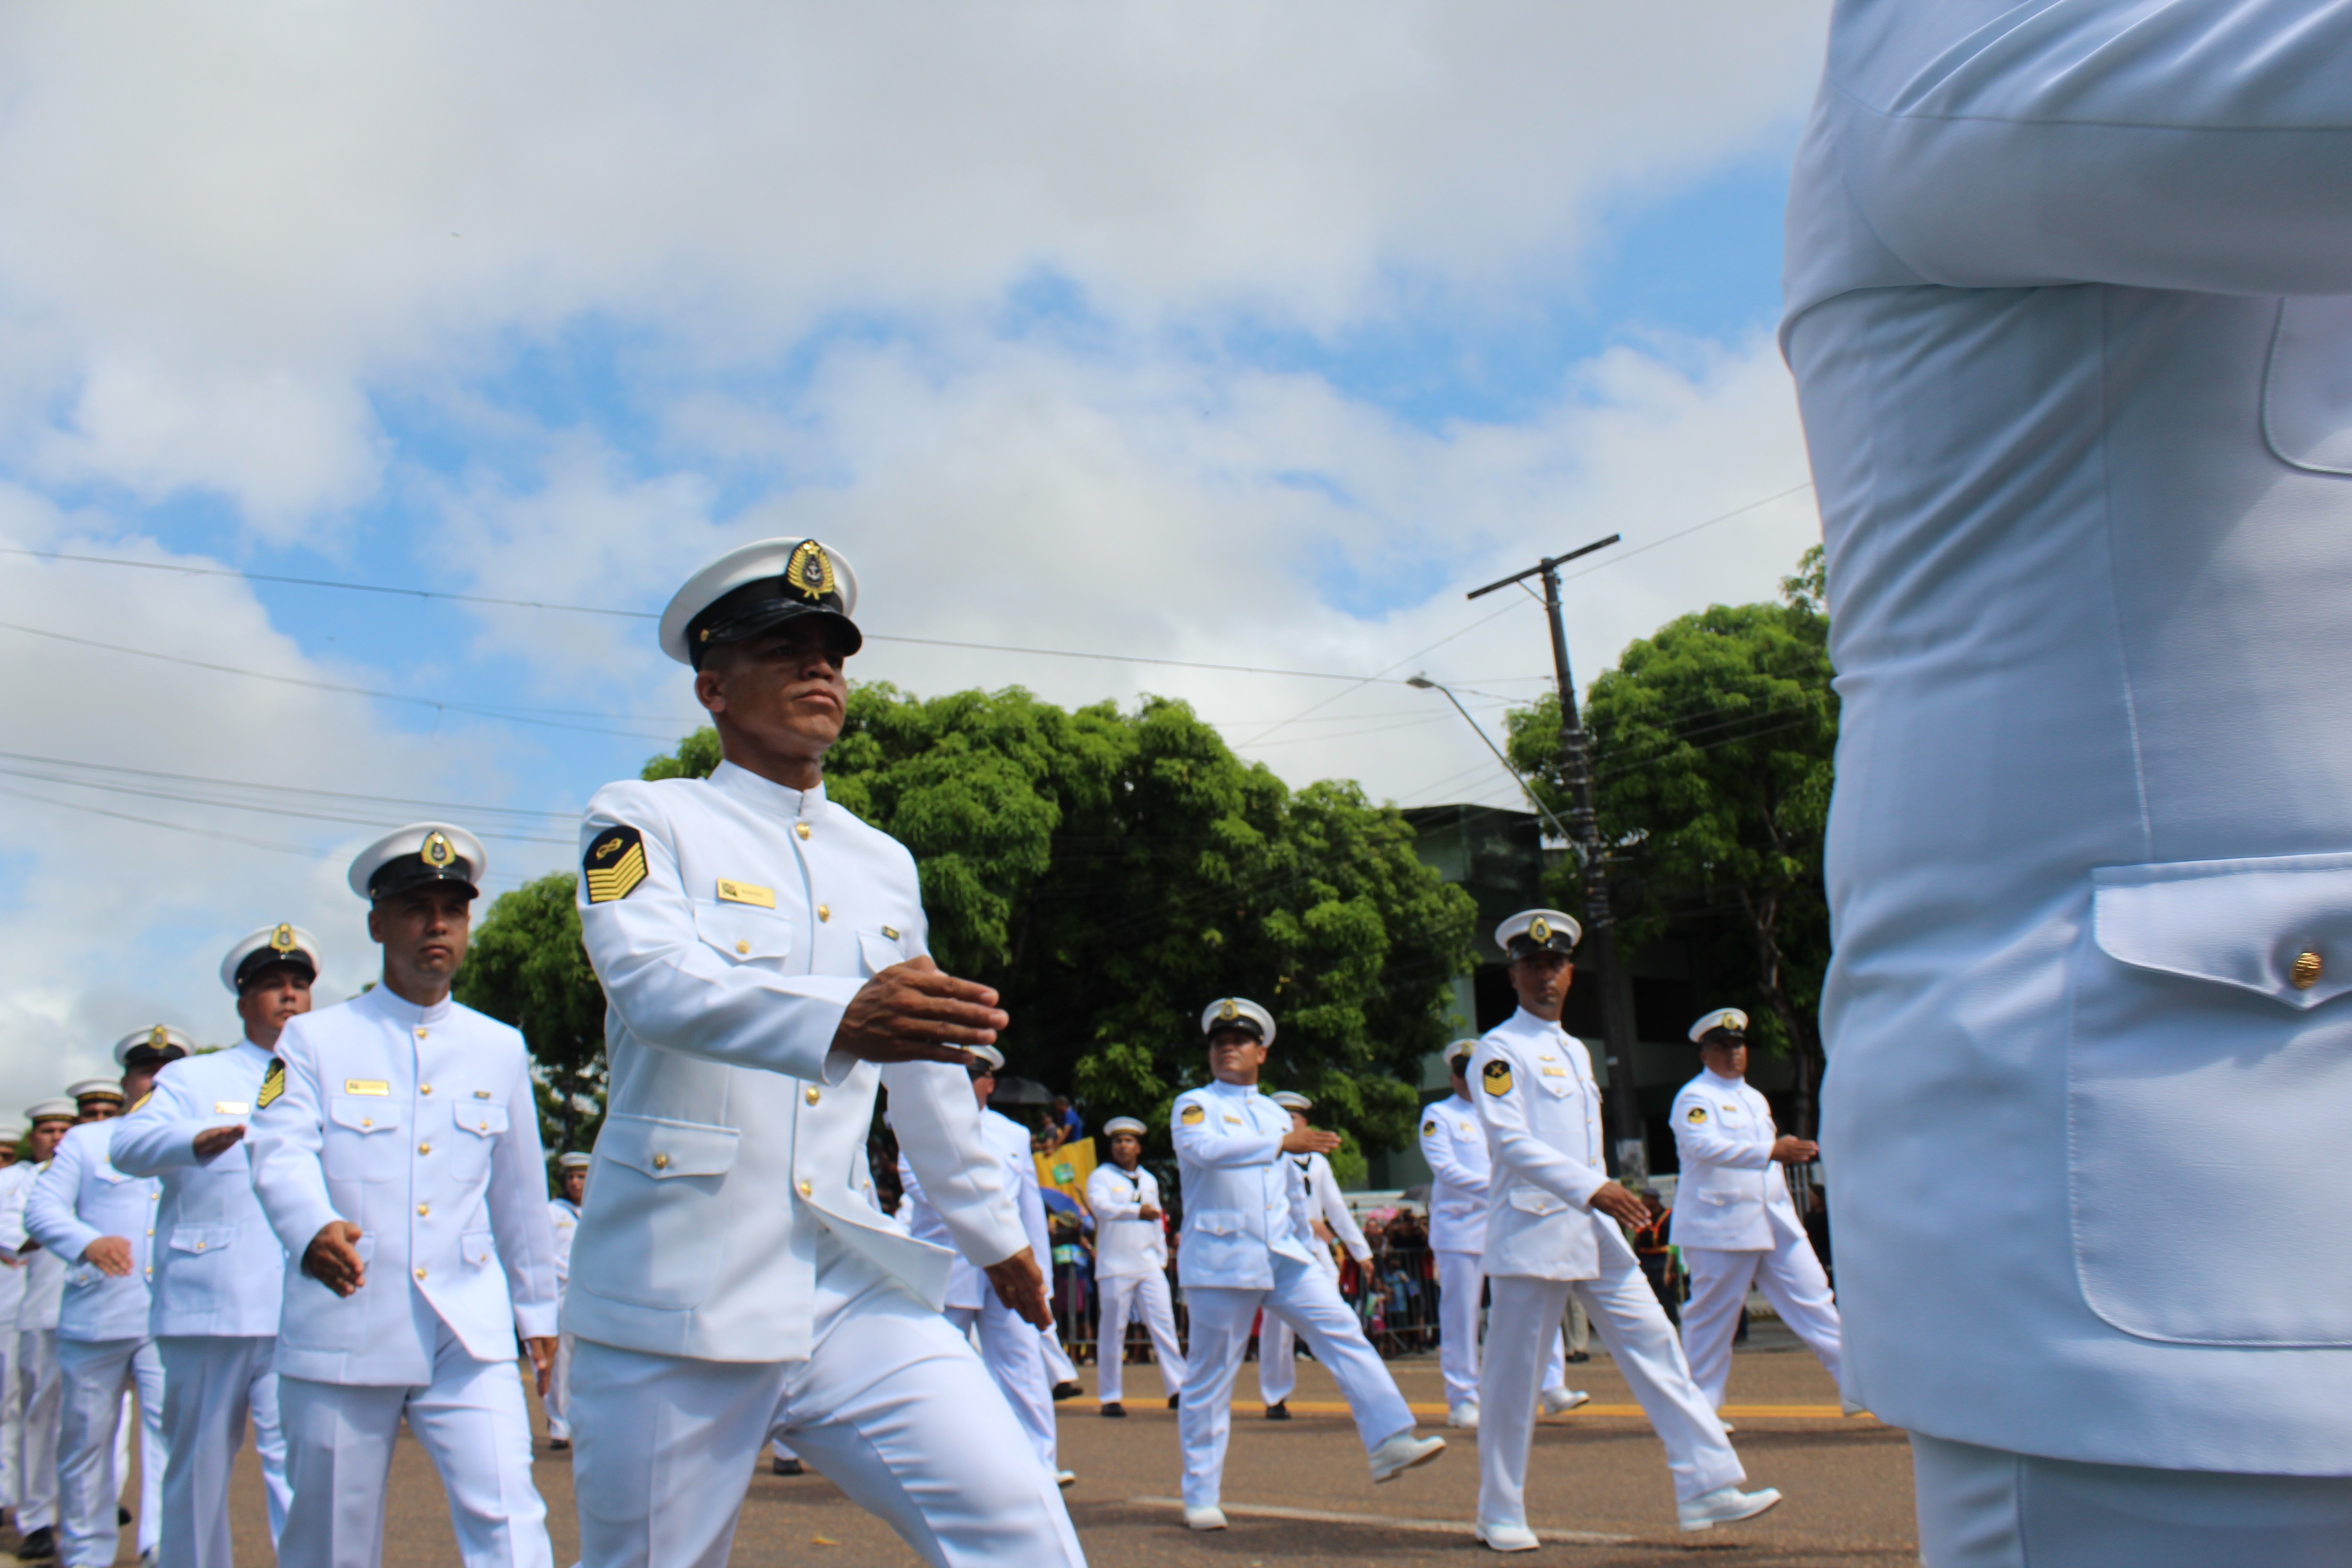 Marinha abre processo seletivo com 66 vagas para o Serviço Militar Voluntário em cidades da BA; confira como participar